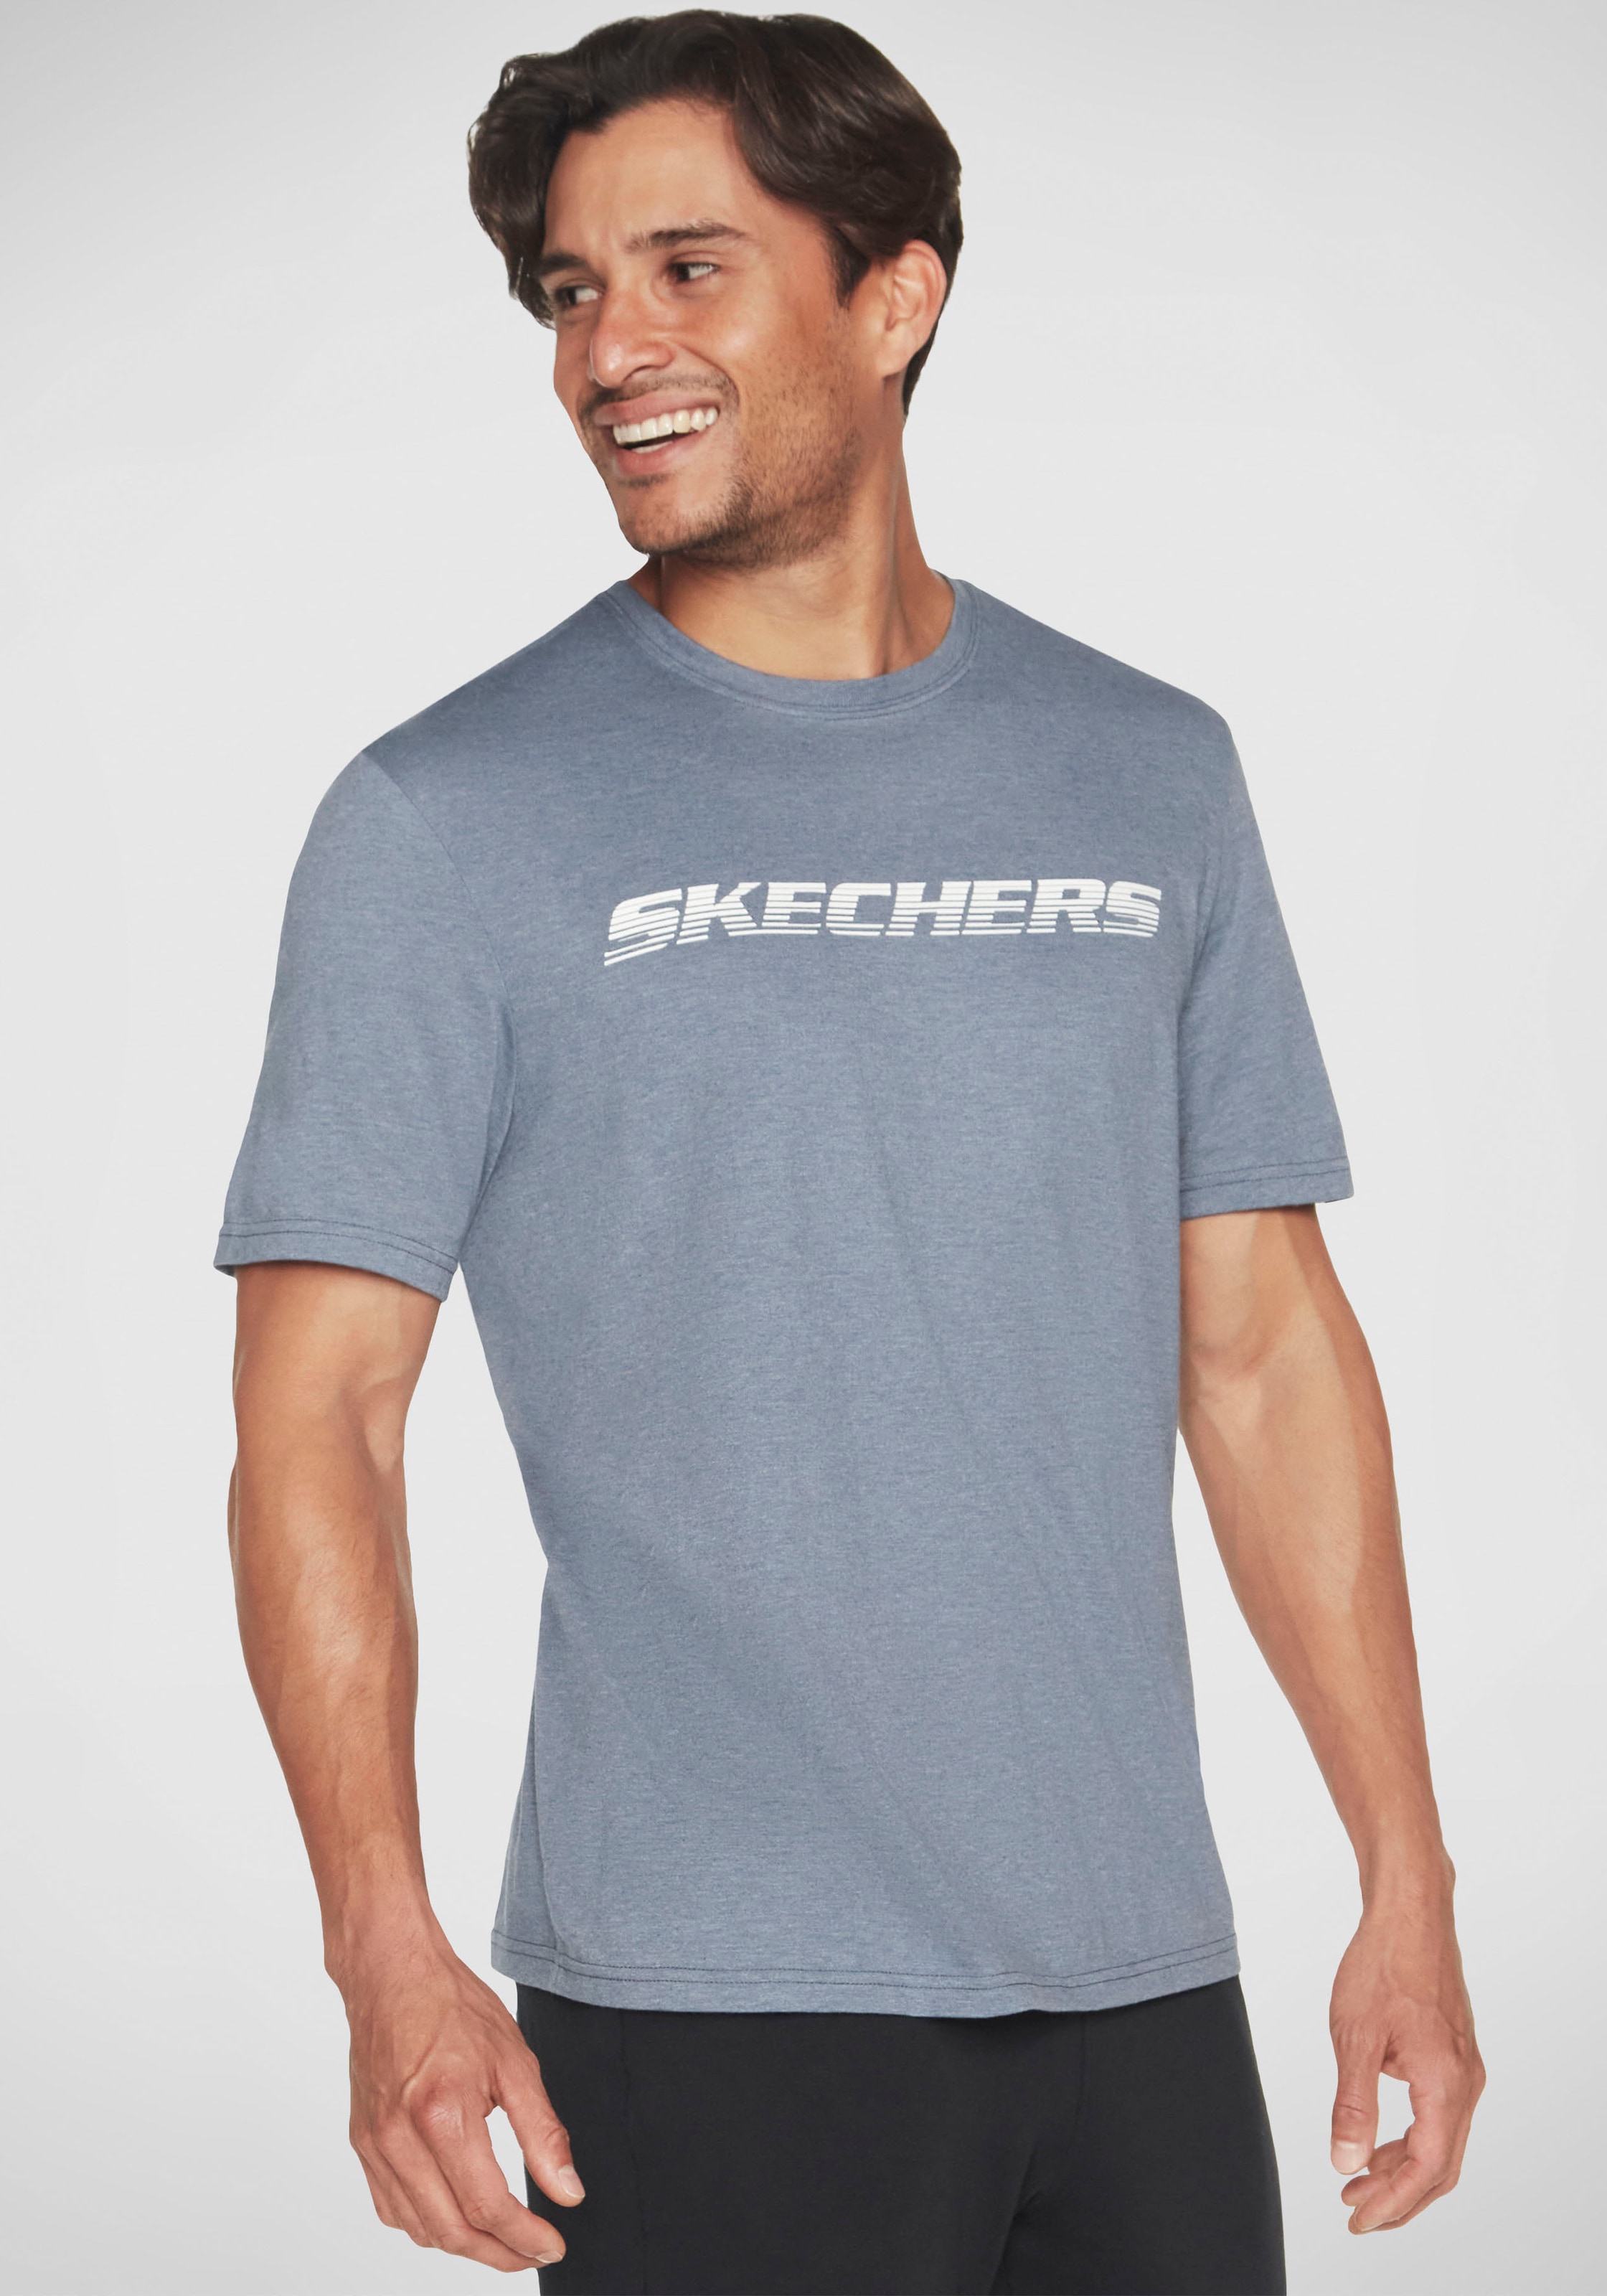 »MOTION TEE« BAUR ▷ T-Shirt | Skechers kaufen